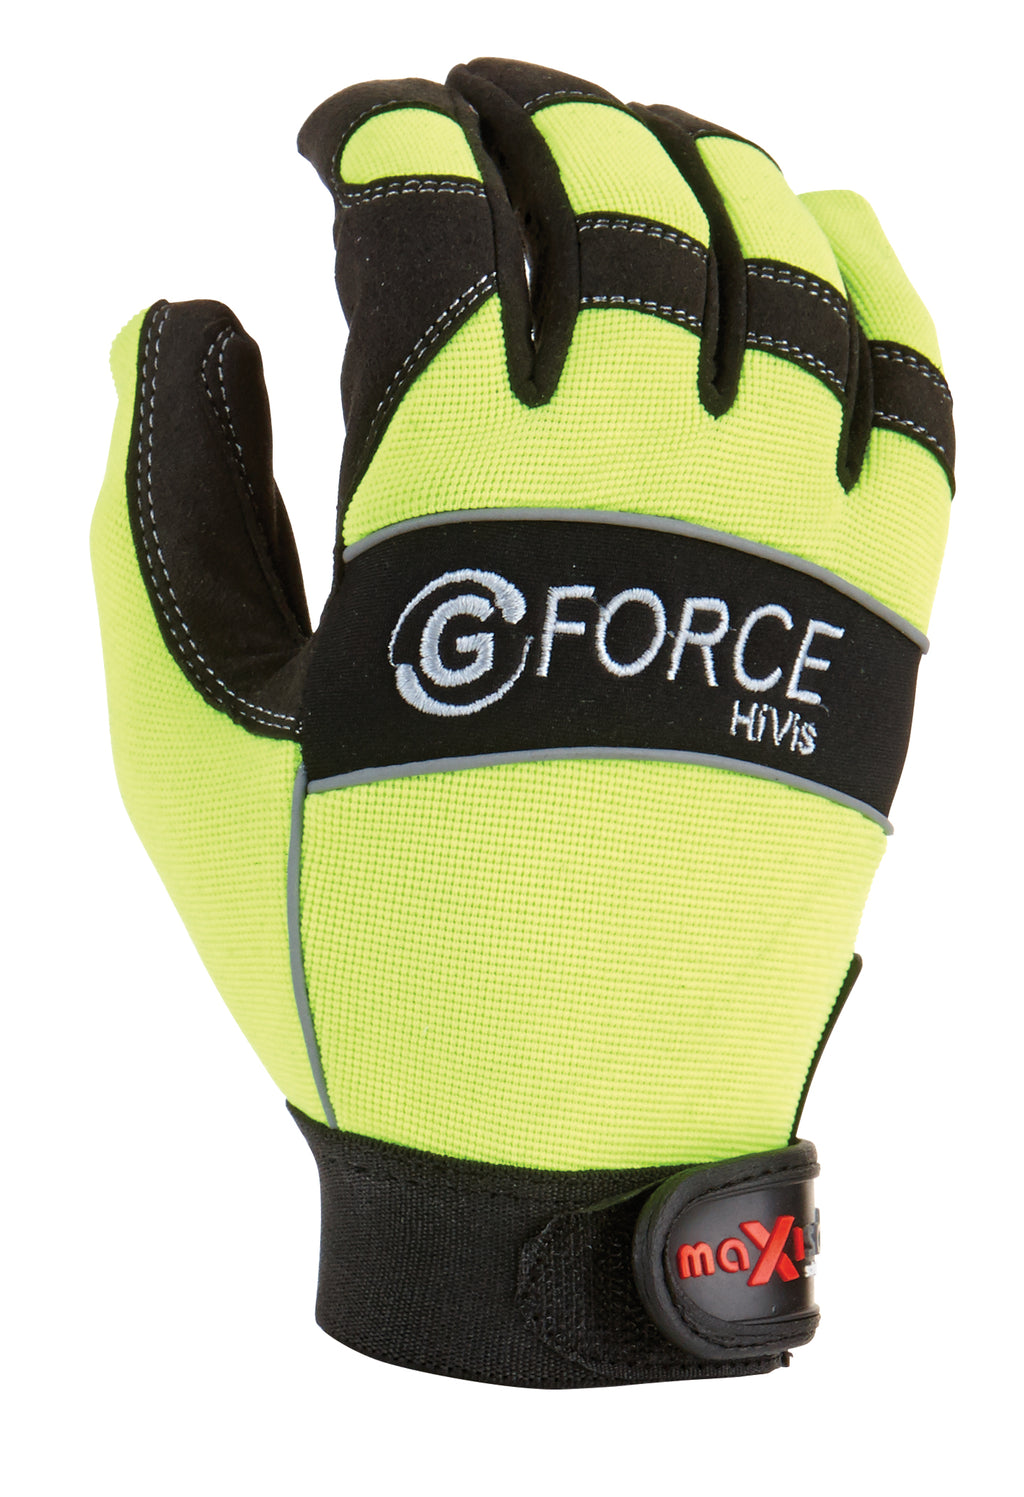 G-Force HiVis Mechanics Glove